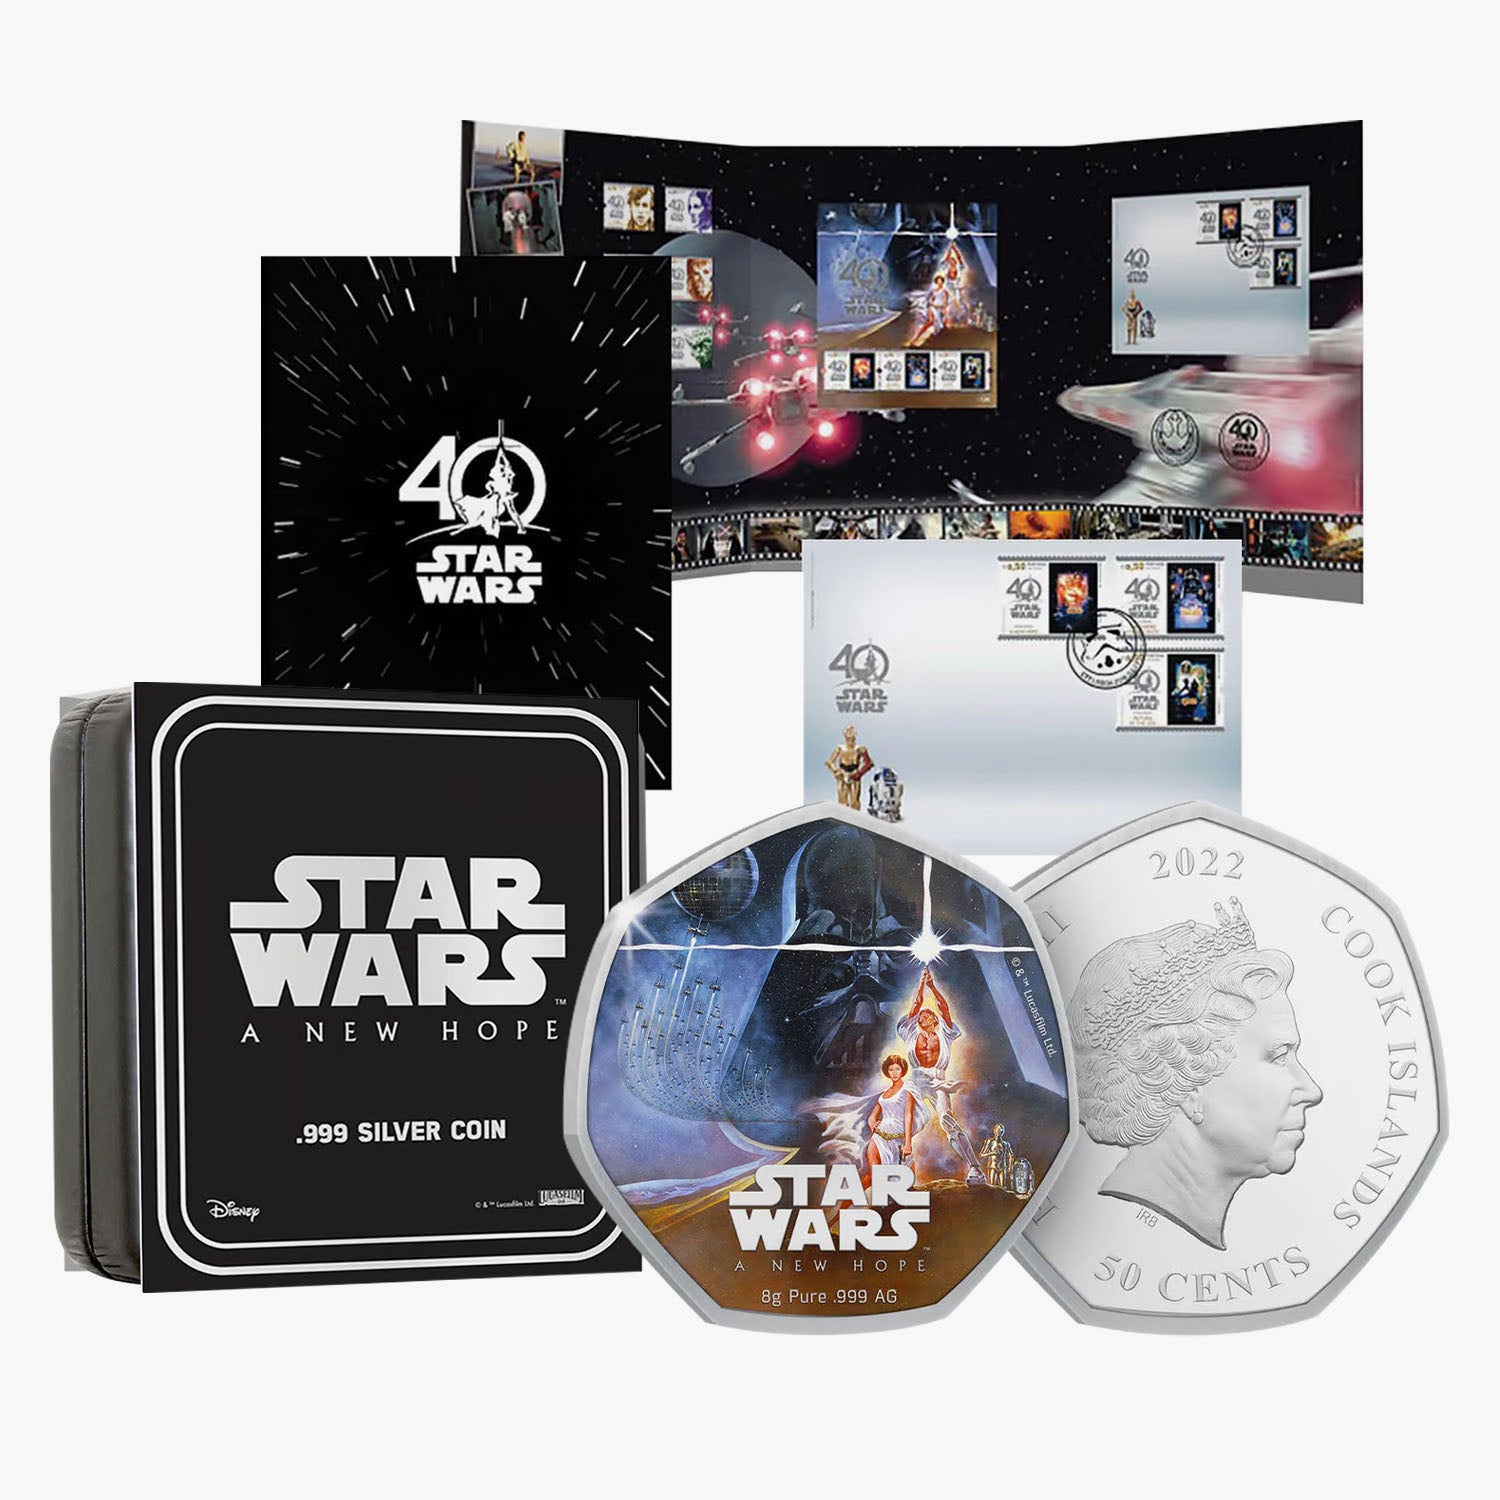 Ensemble de pièces et de timbres en argent massif pour l'anniversaire de Star Wars